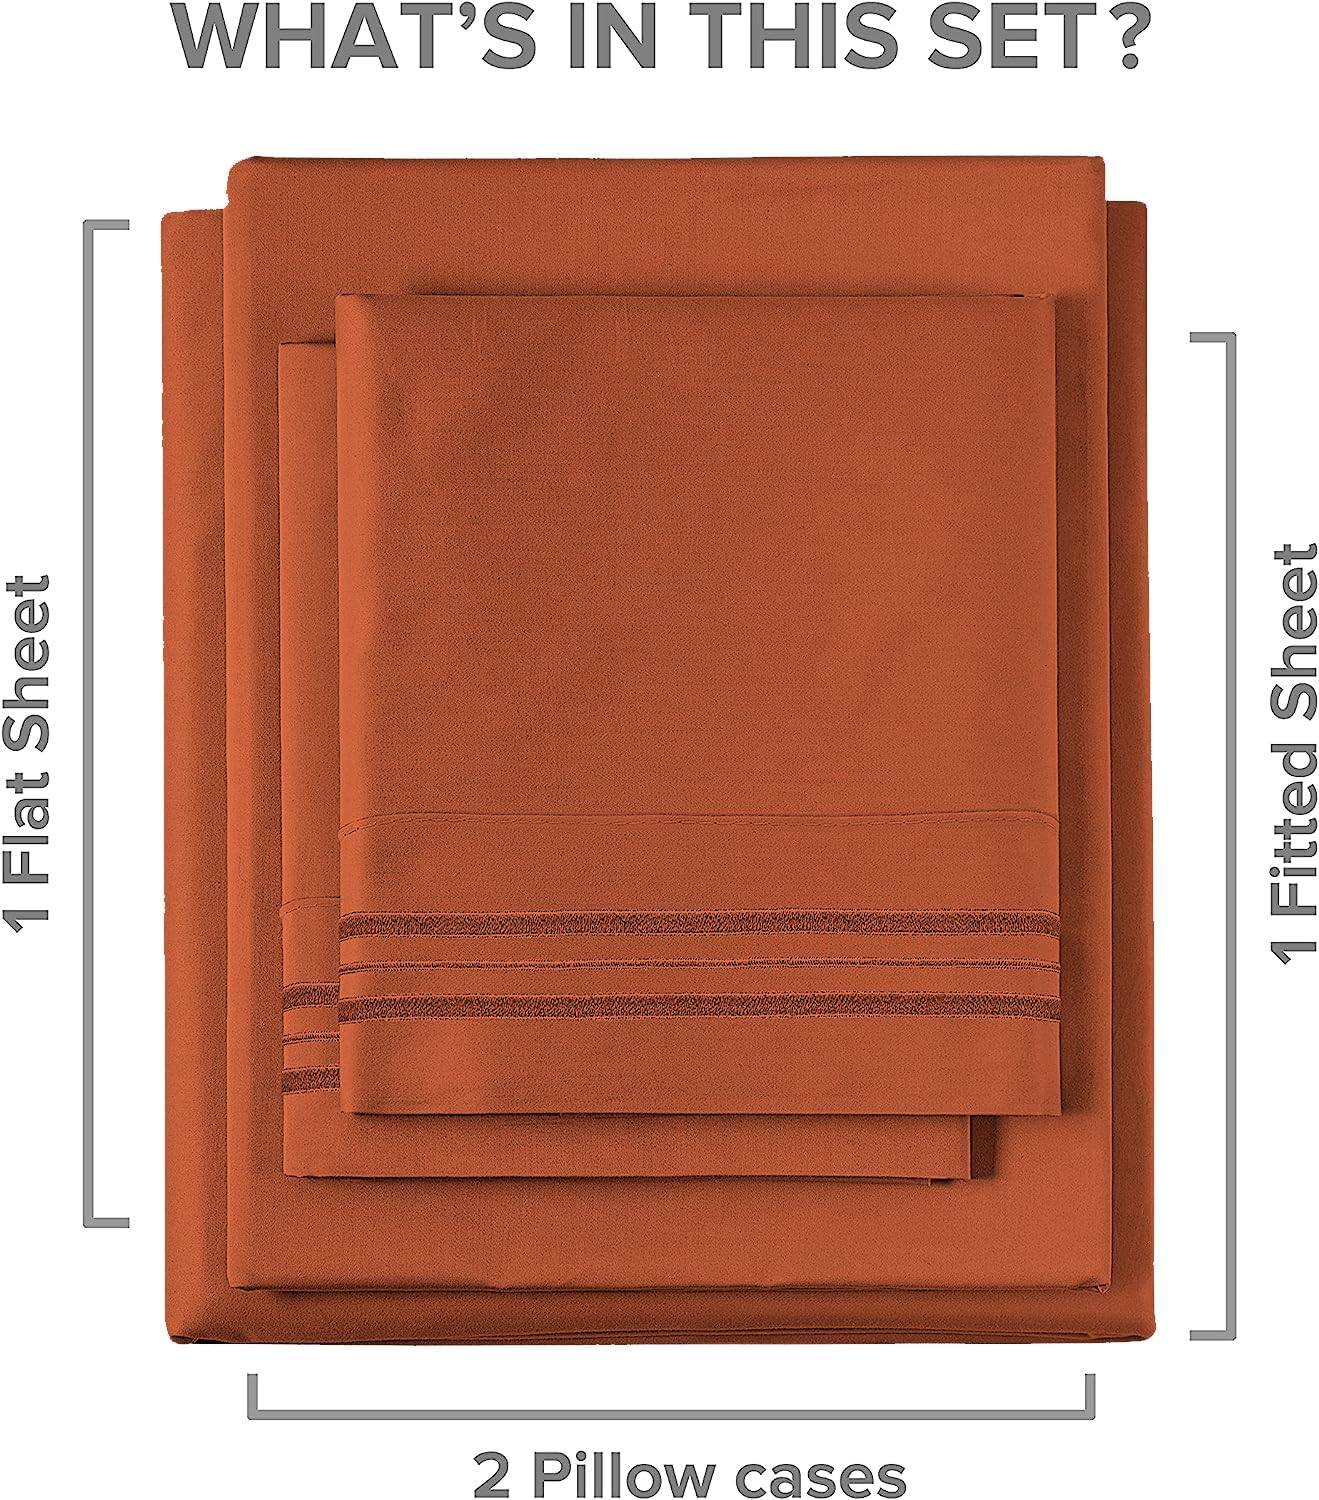 4 Piece Deep Pocket Sheet Set New Colors - Terracotta